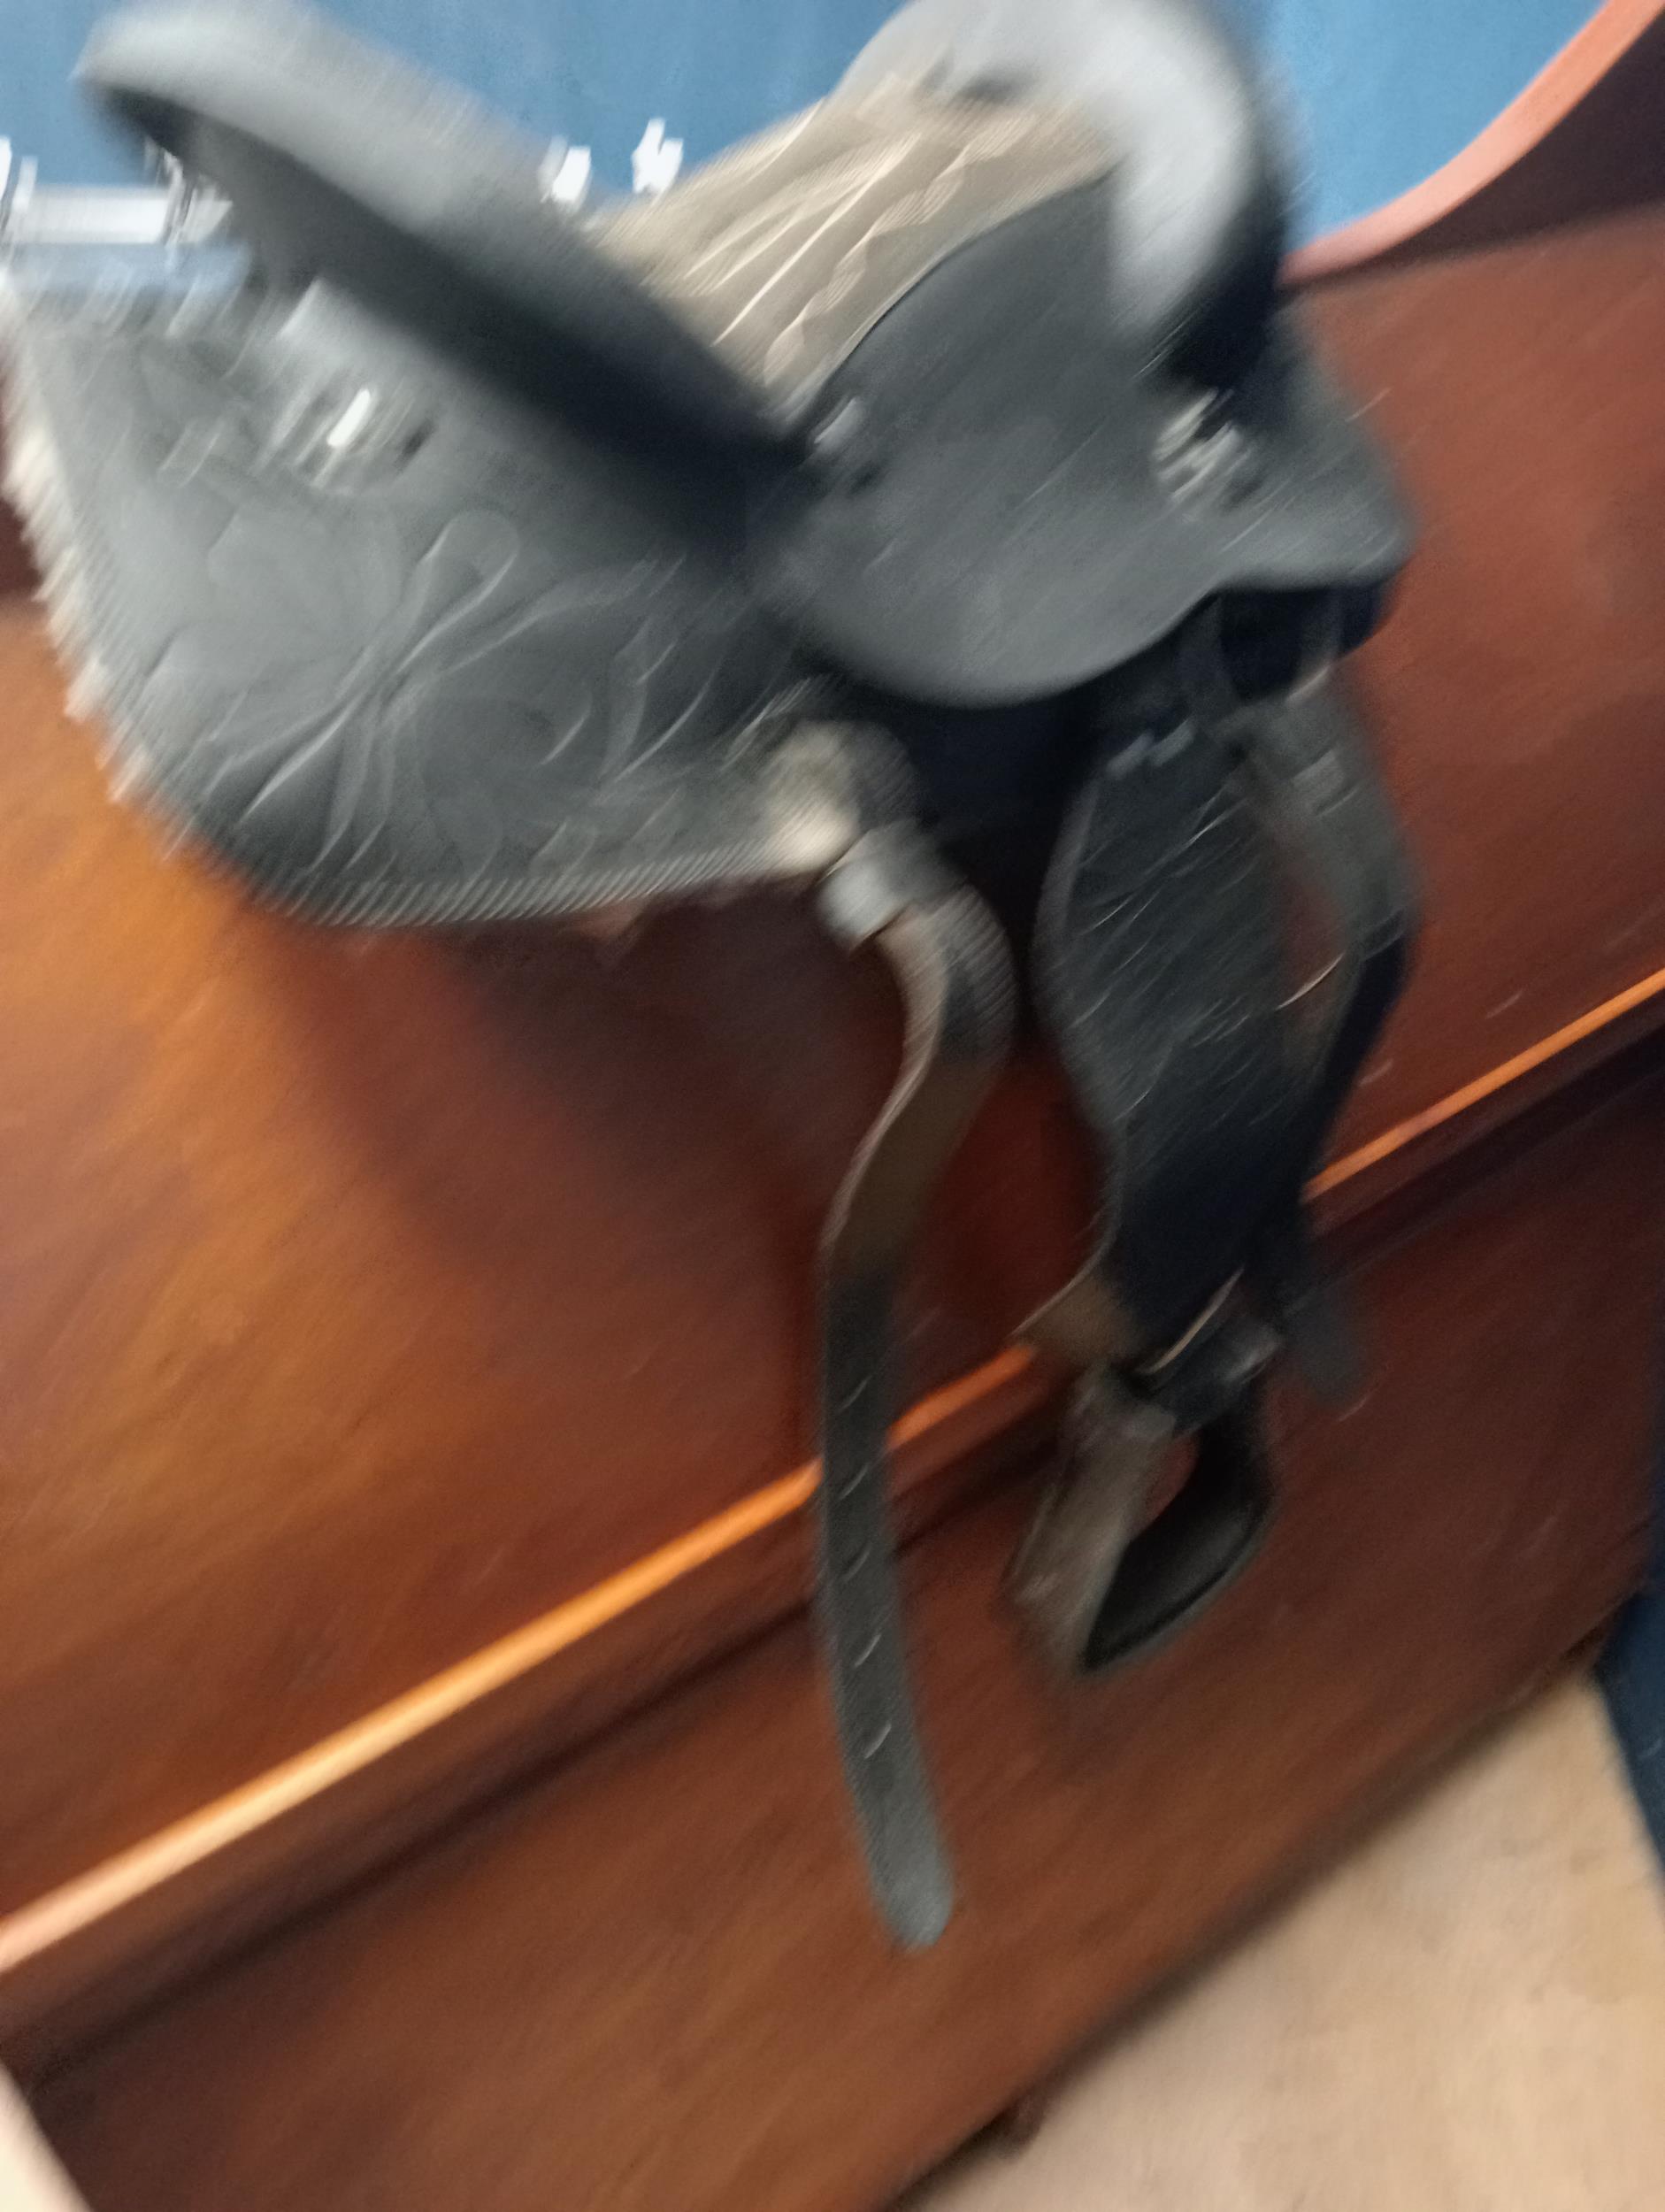 Cowboys leather saddle {H 60cm x W 50cm x D 40cm }. - Image 3 of 5